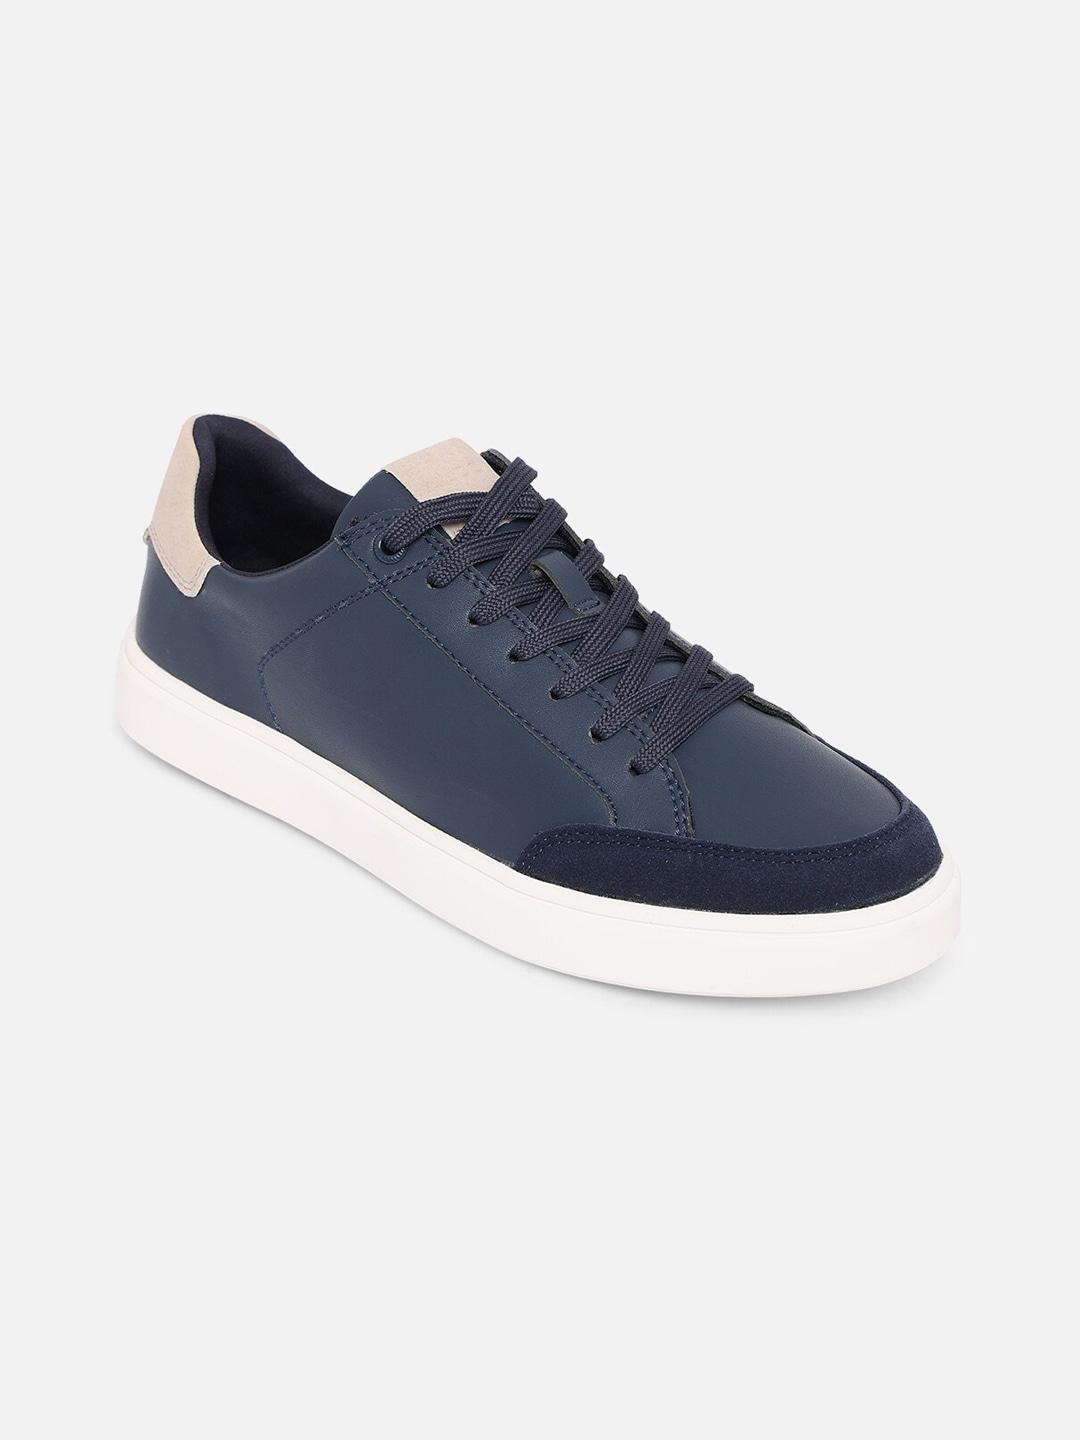 aldo-men-navy-blue-sneakers